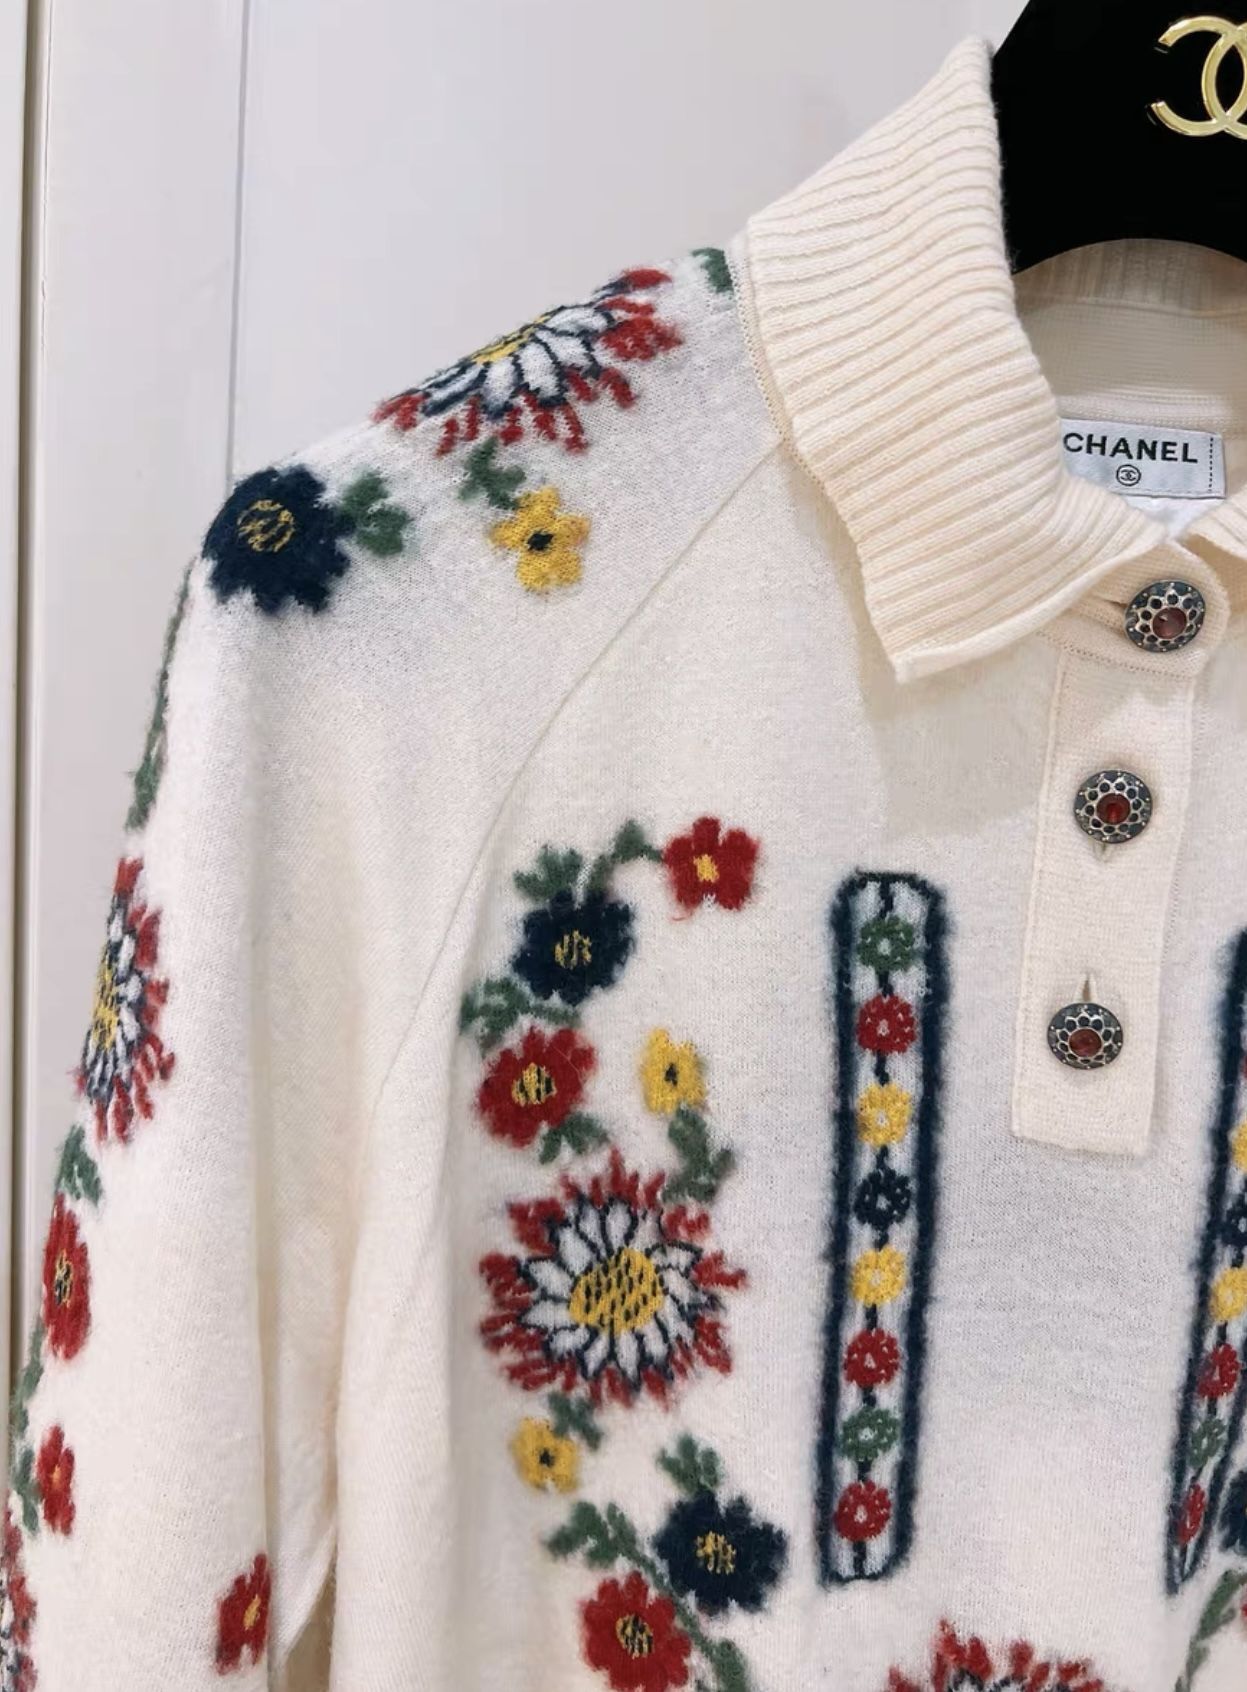 Chanel Salzburg catwalk crochet sweater in Paris